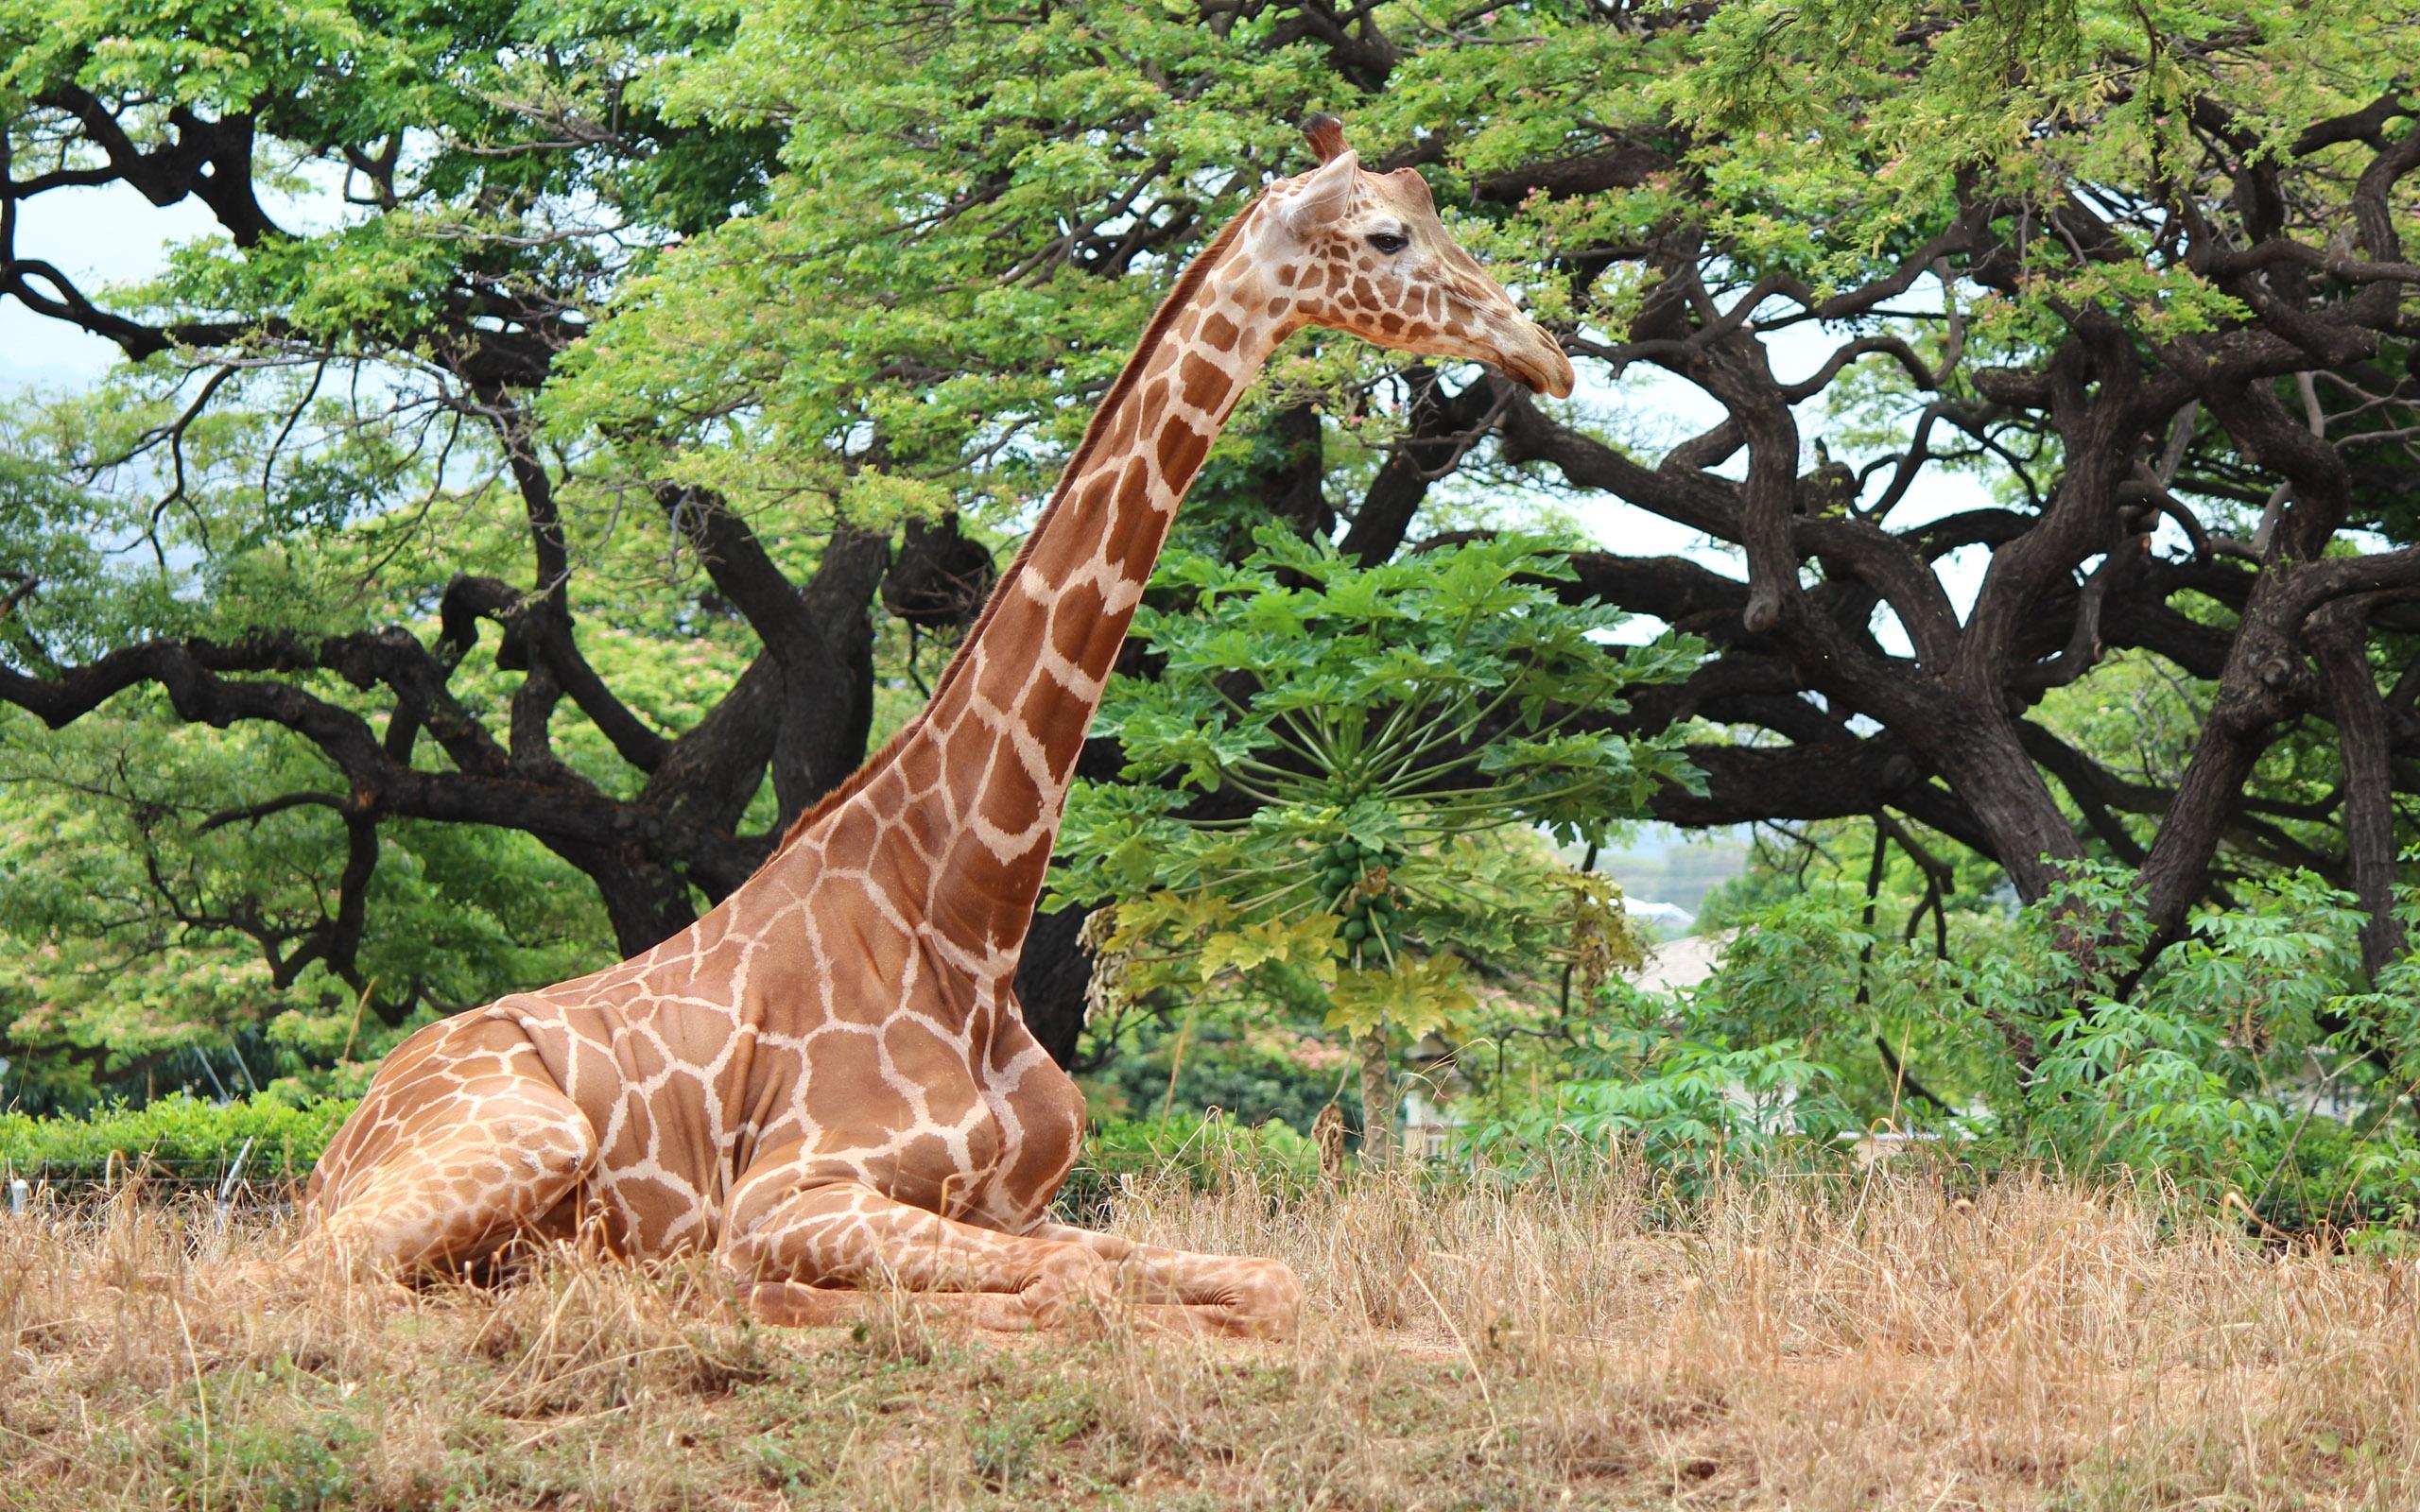 А у жирафа шея длинная. Жираф на дереве. Жирафы с деревом. Жираф ест листья. Жираф выше дерева.